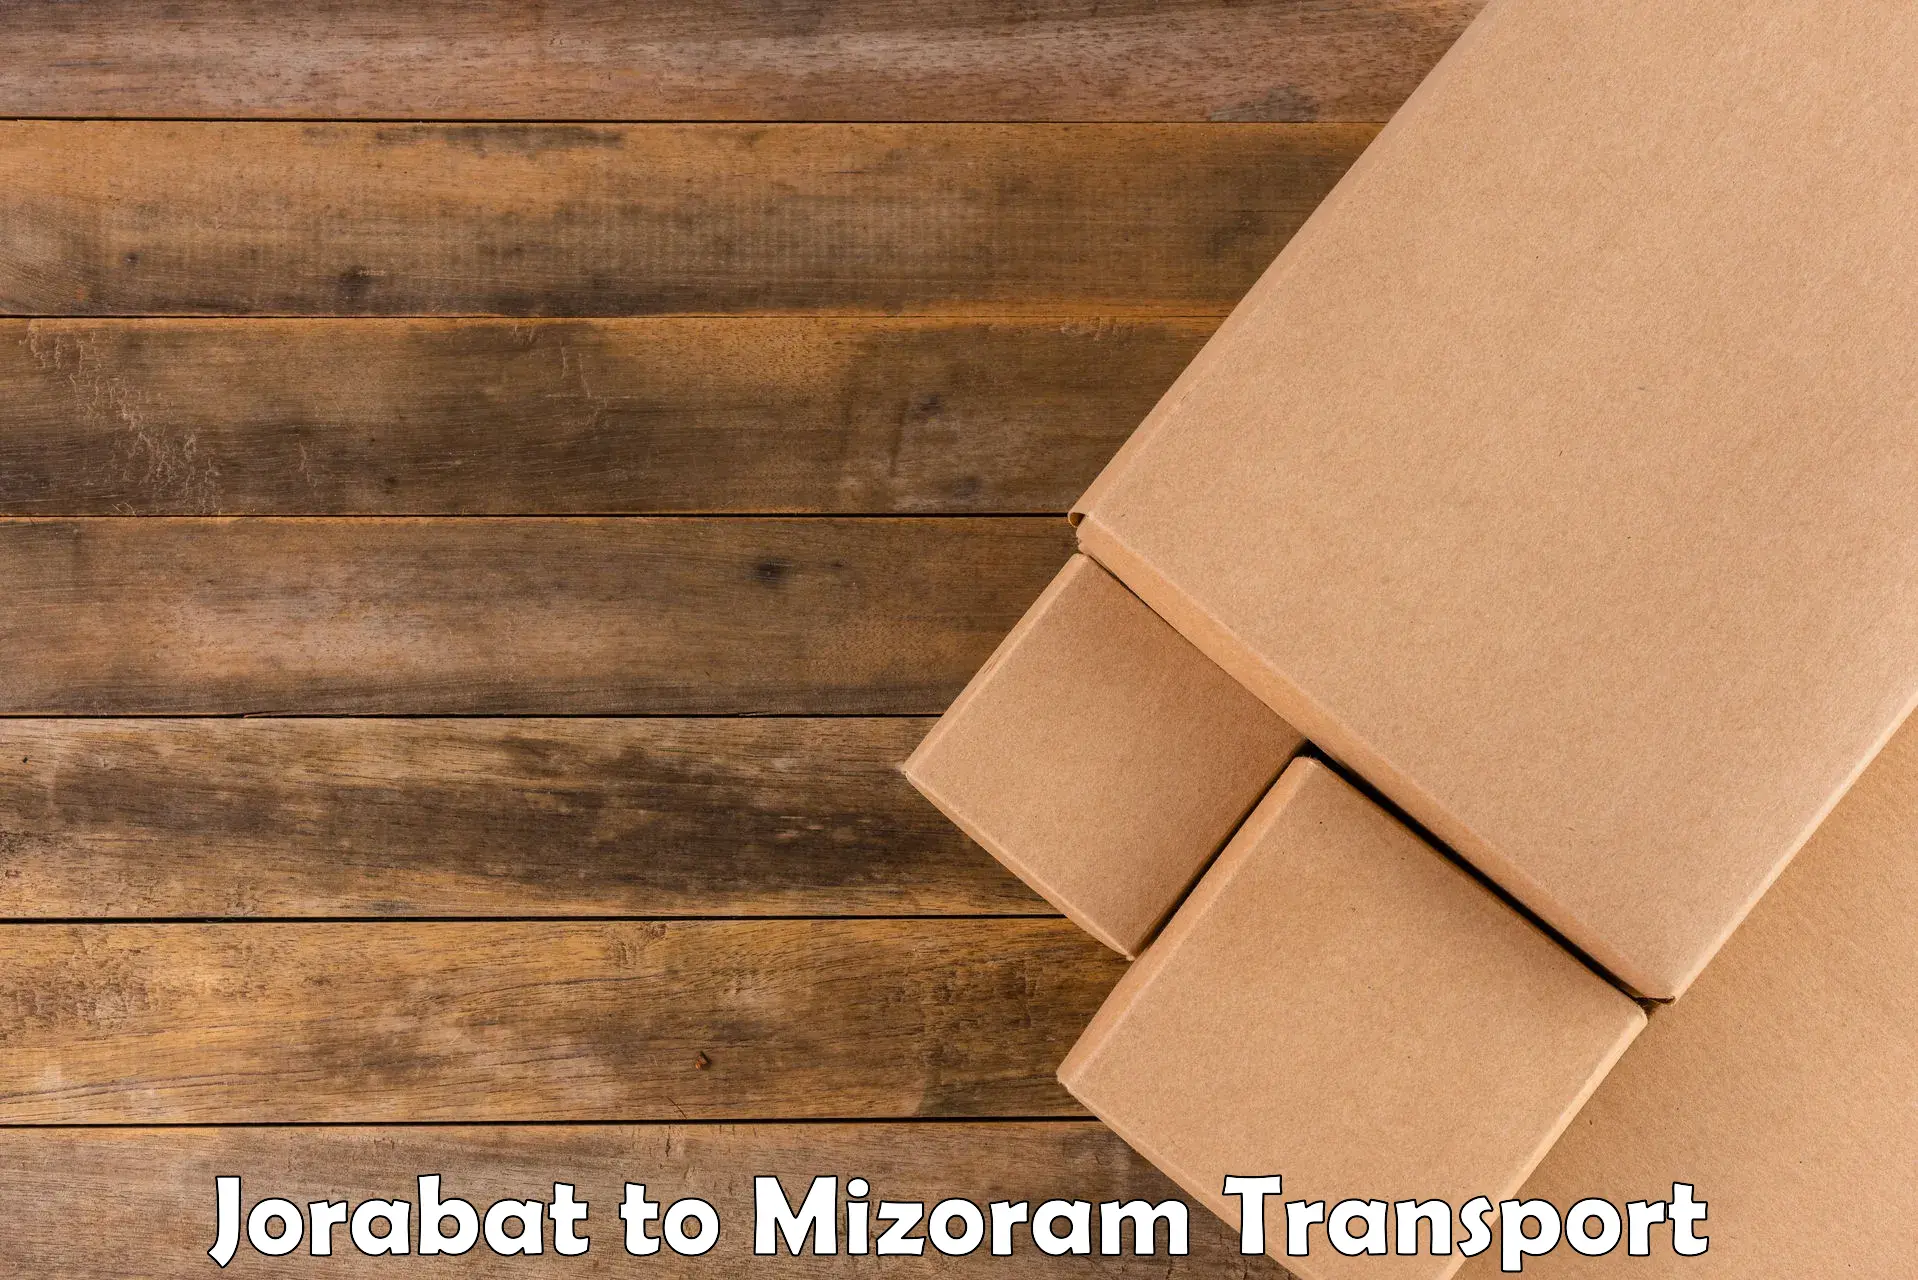 Online transport service in Jorabat to Mizoram